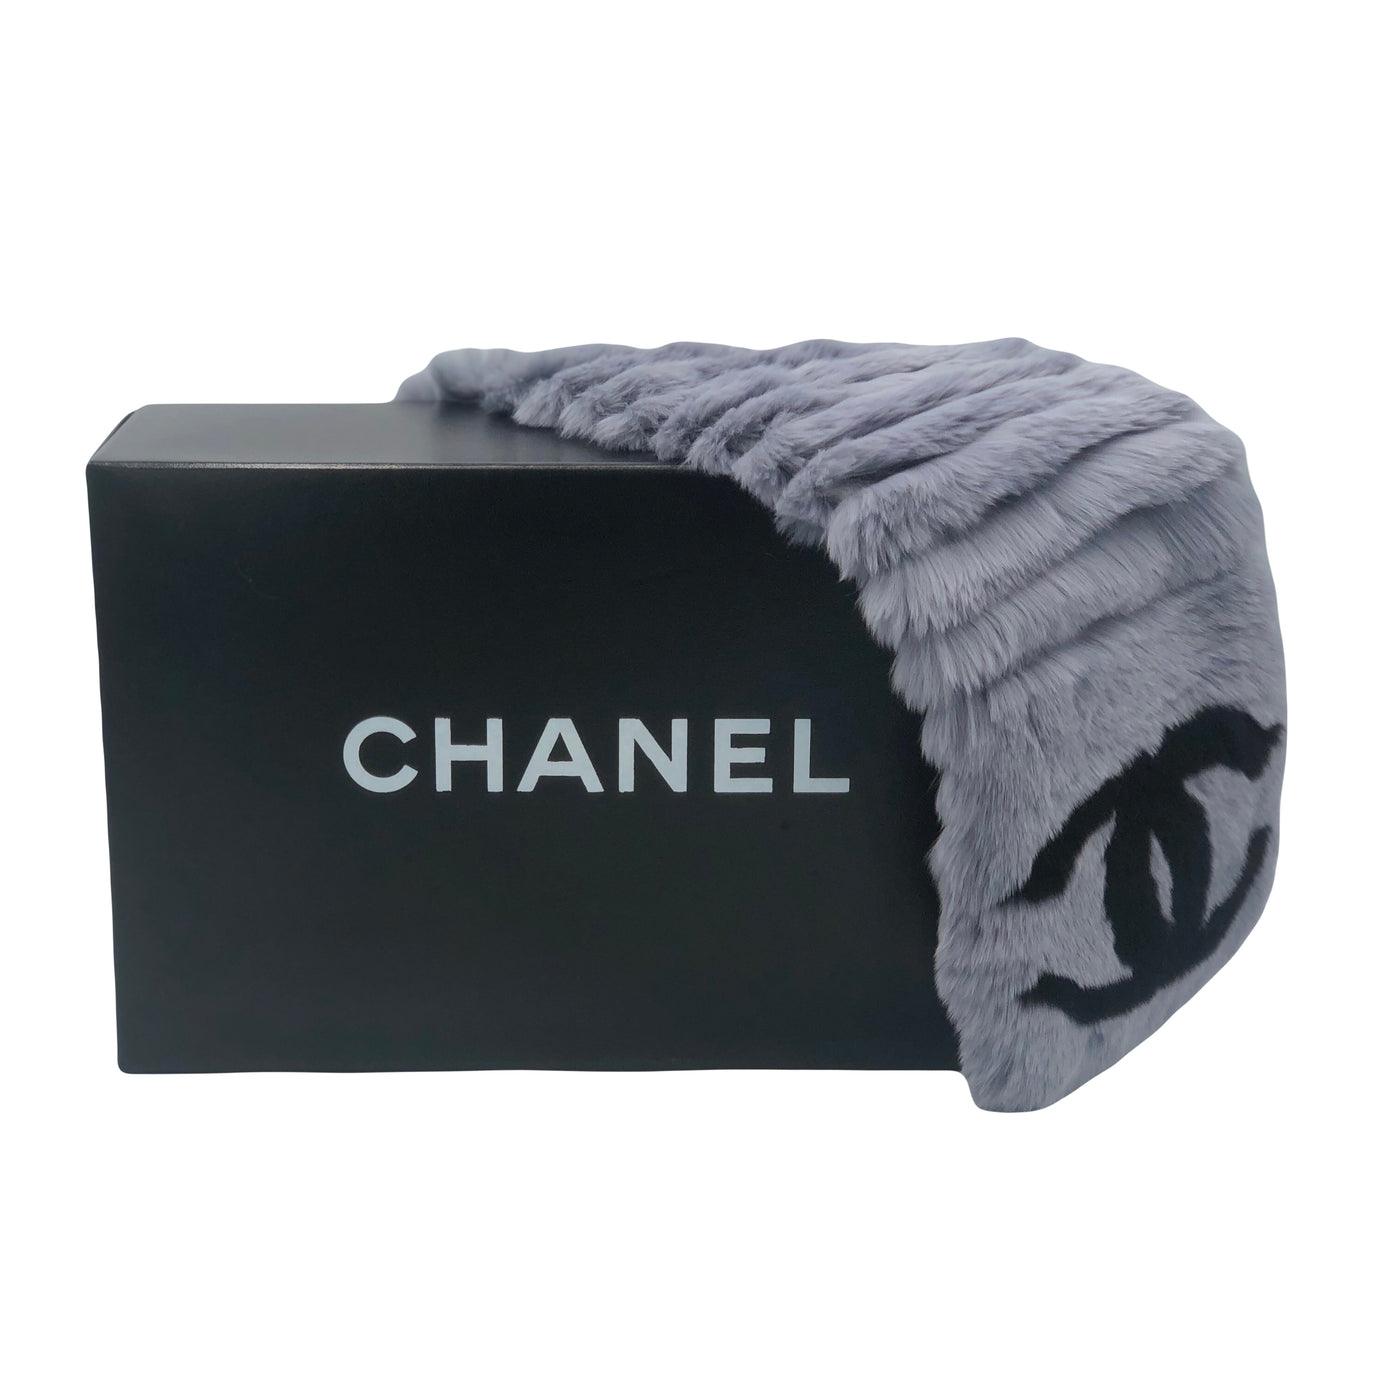 CHANEL grey fur scarf with box